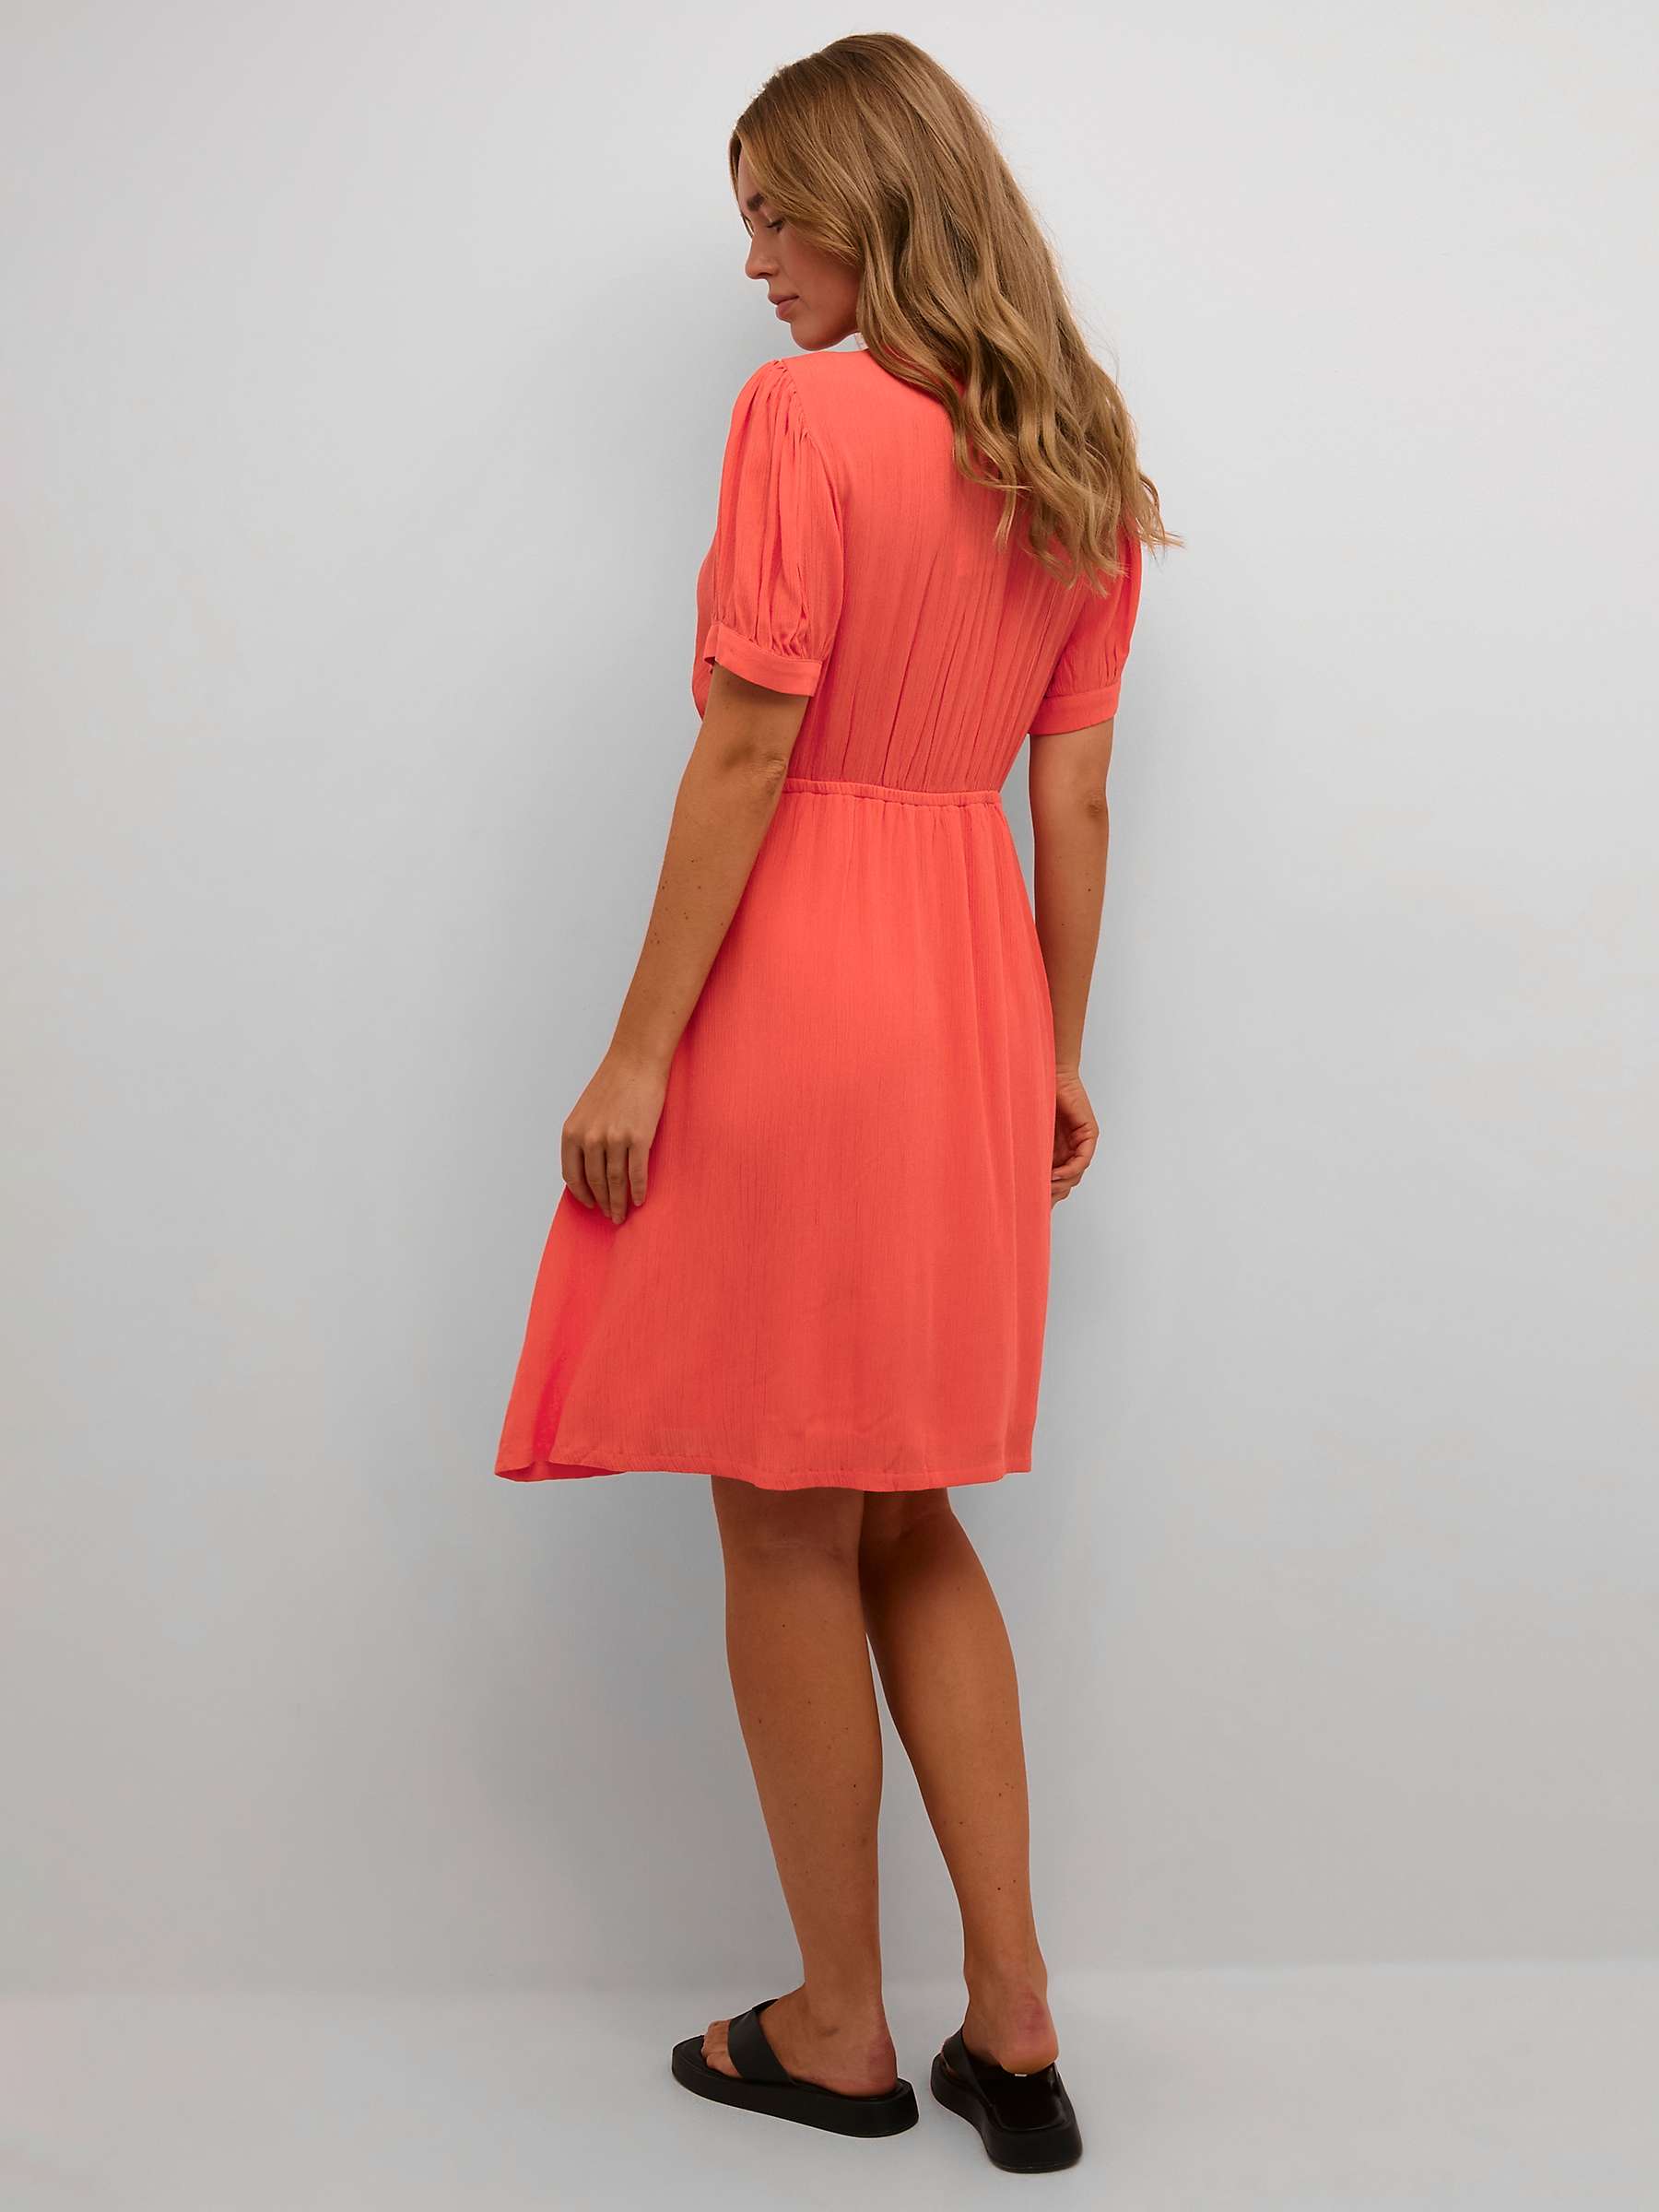 Buy KAFFE Short Sleeve V-Neck Dress Online at johnlewis.com